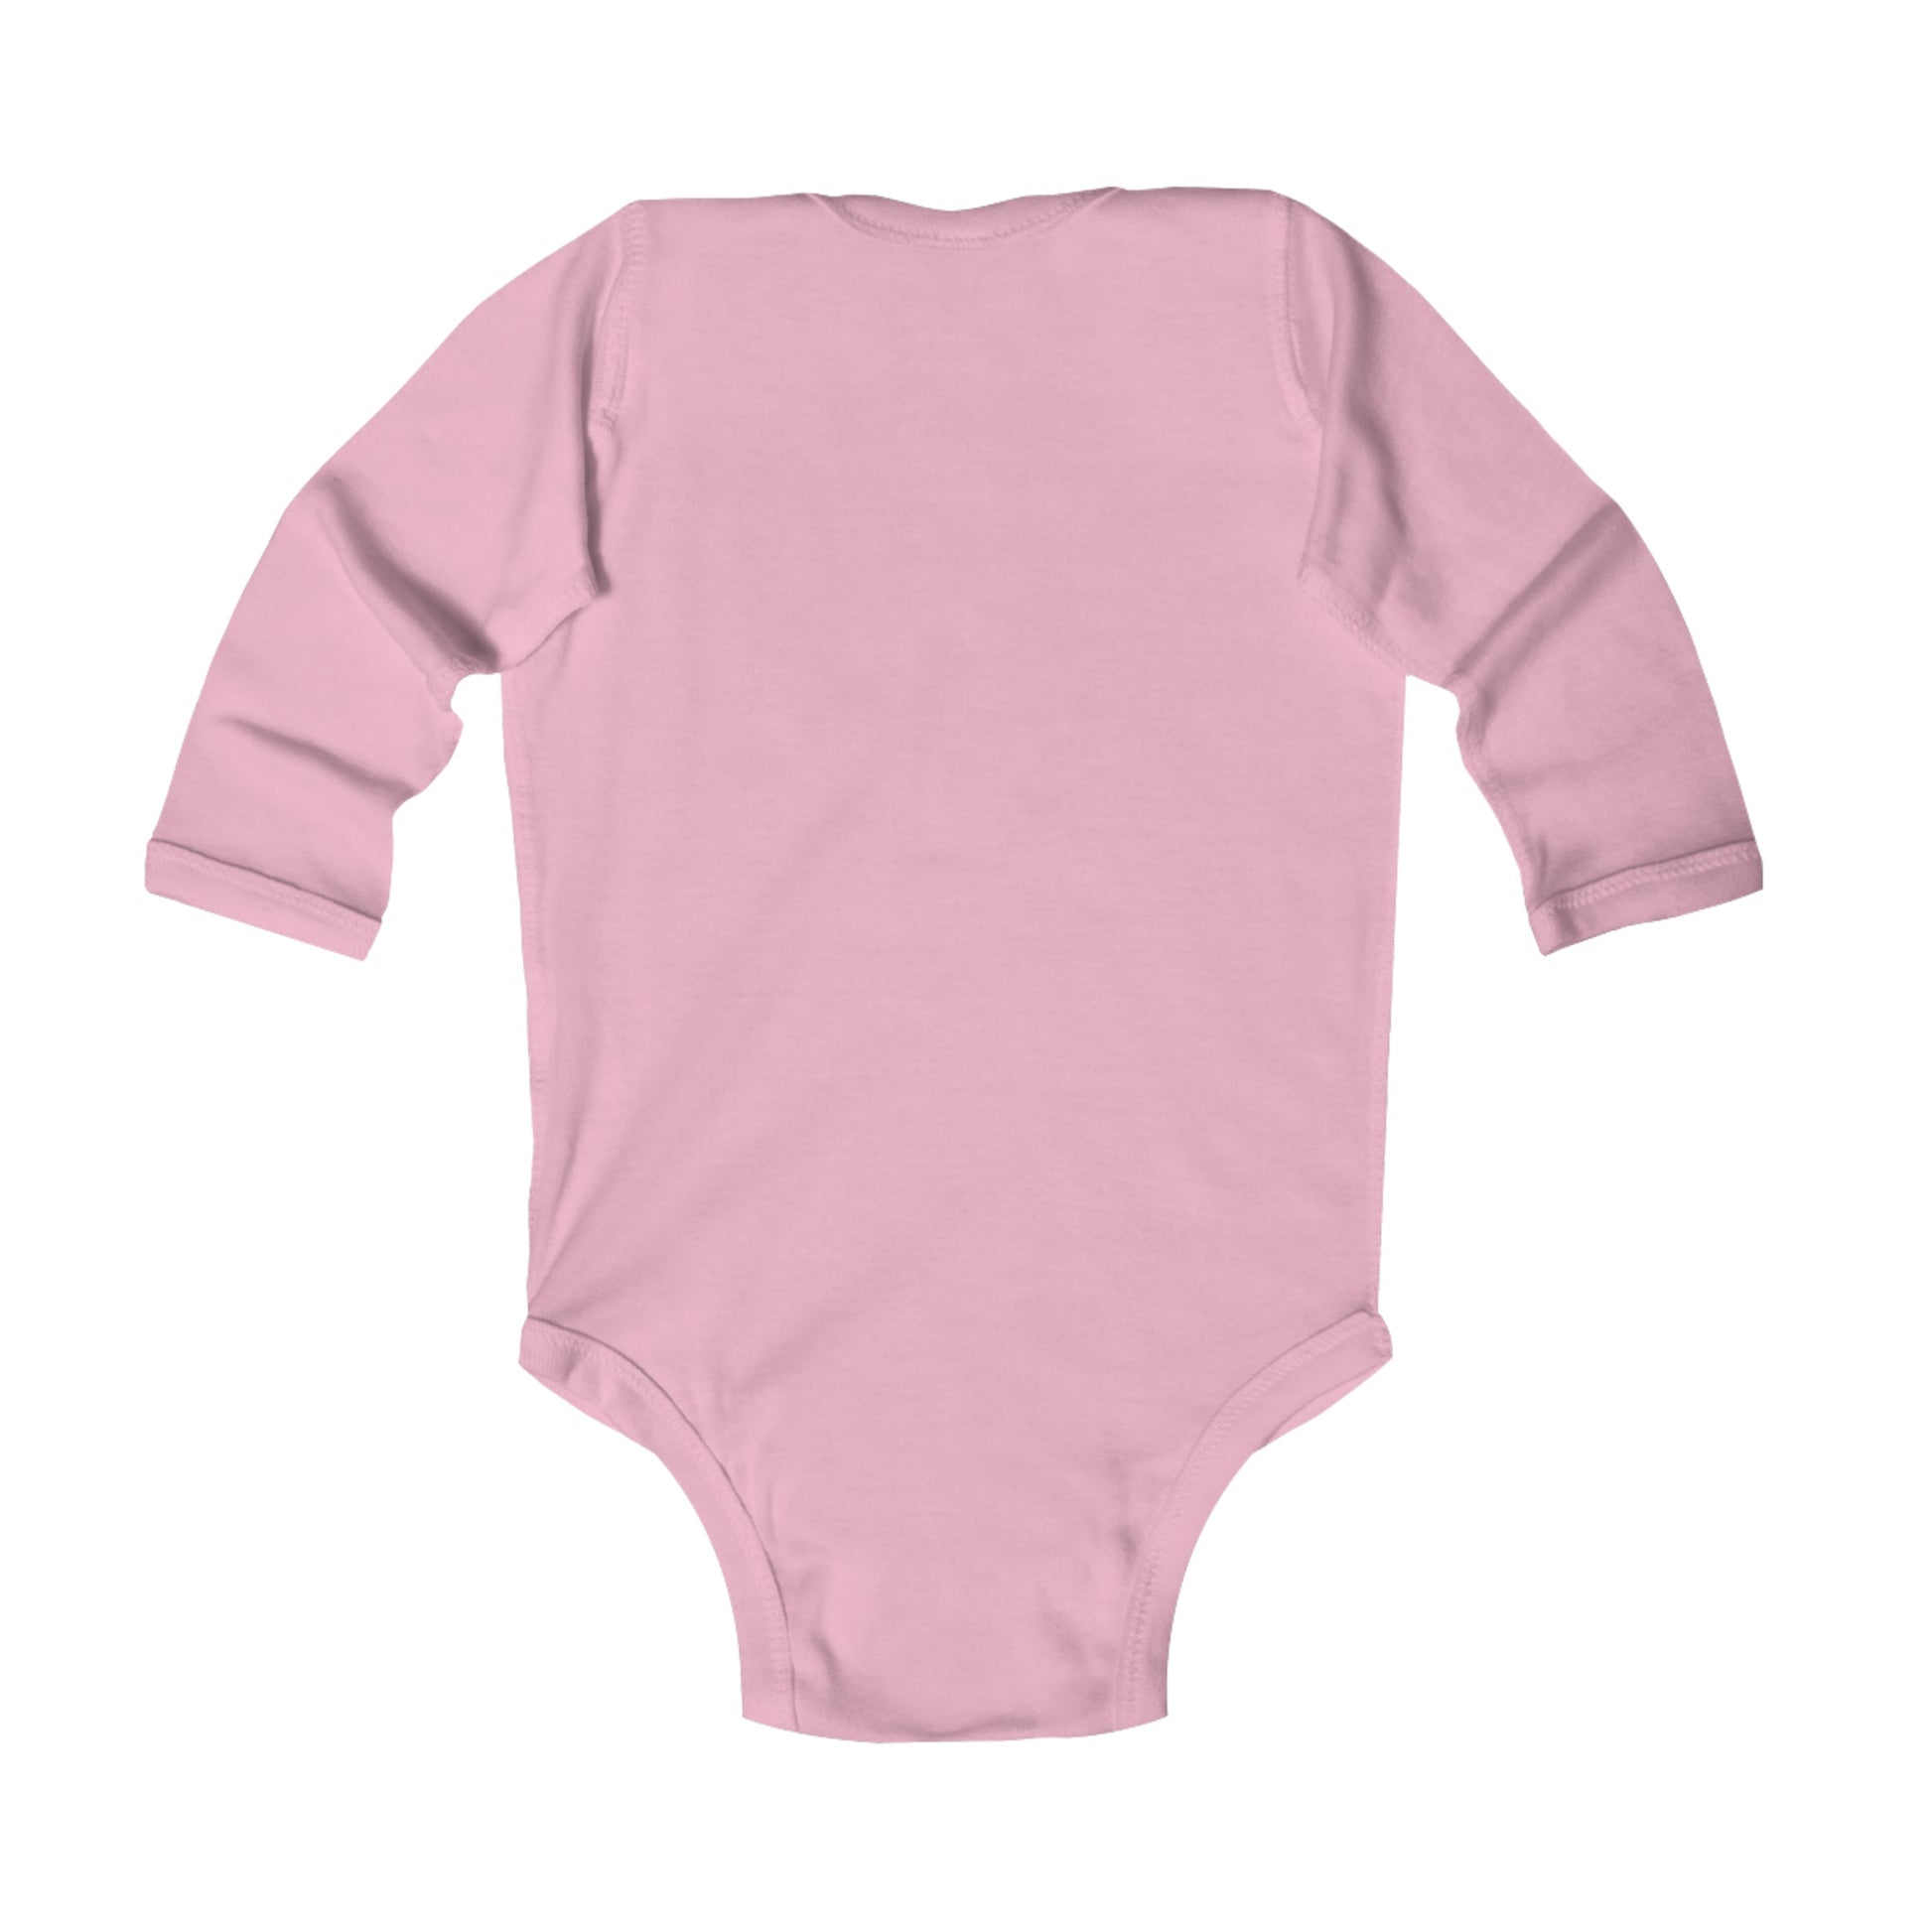 Pooh Dreams Infant Long Sleeve Bodysuit Baby ClothingBodysuitsKids clothesWrong Lever Clothing